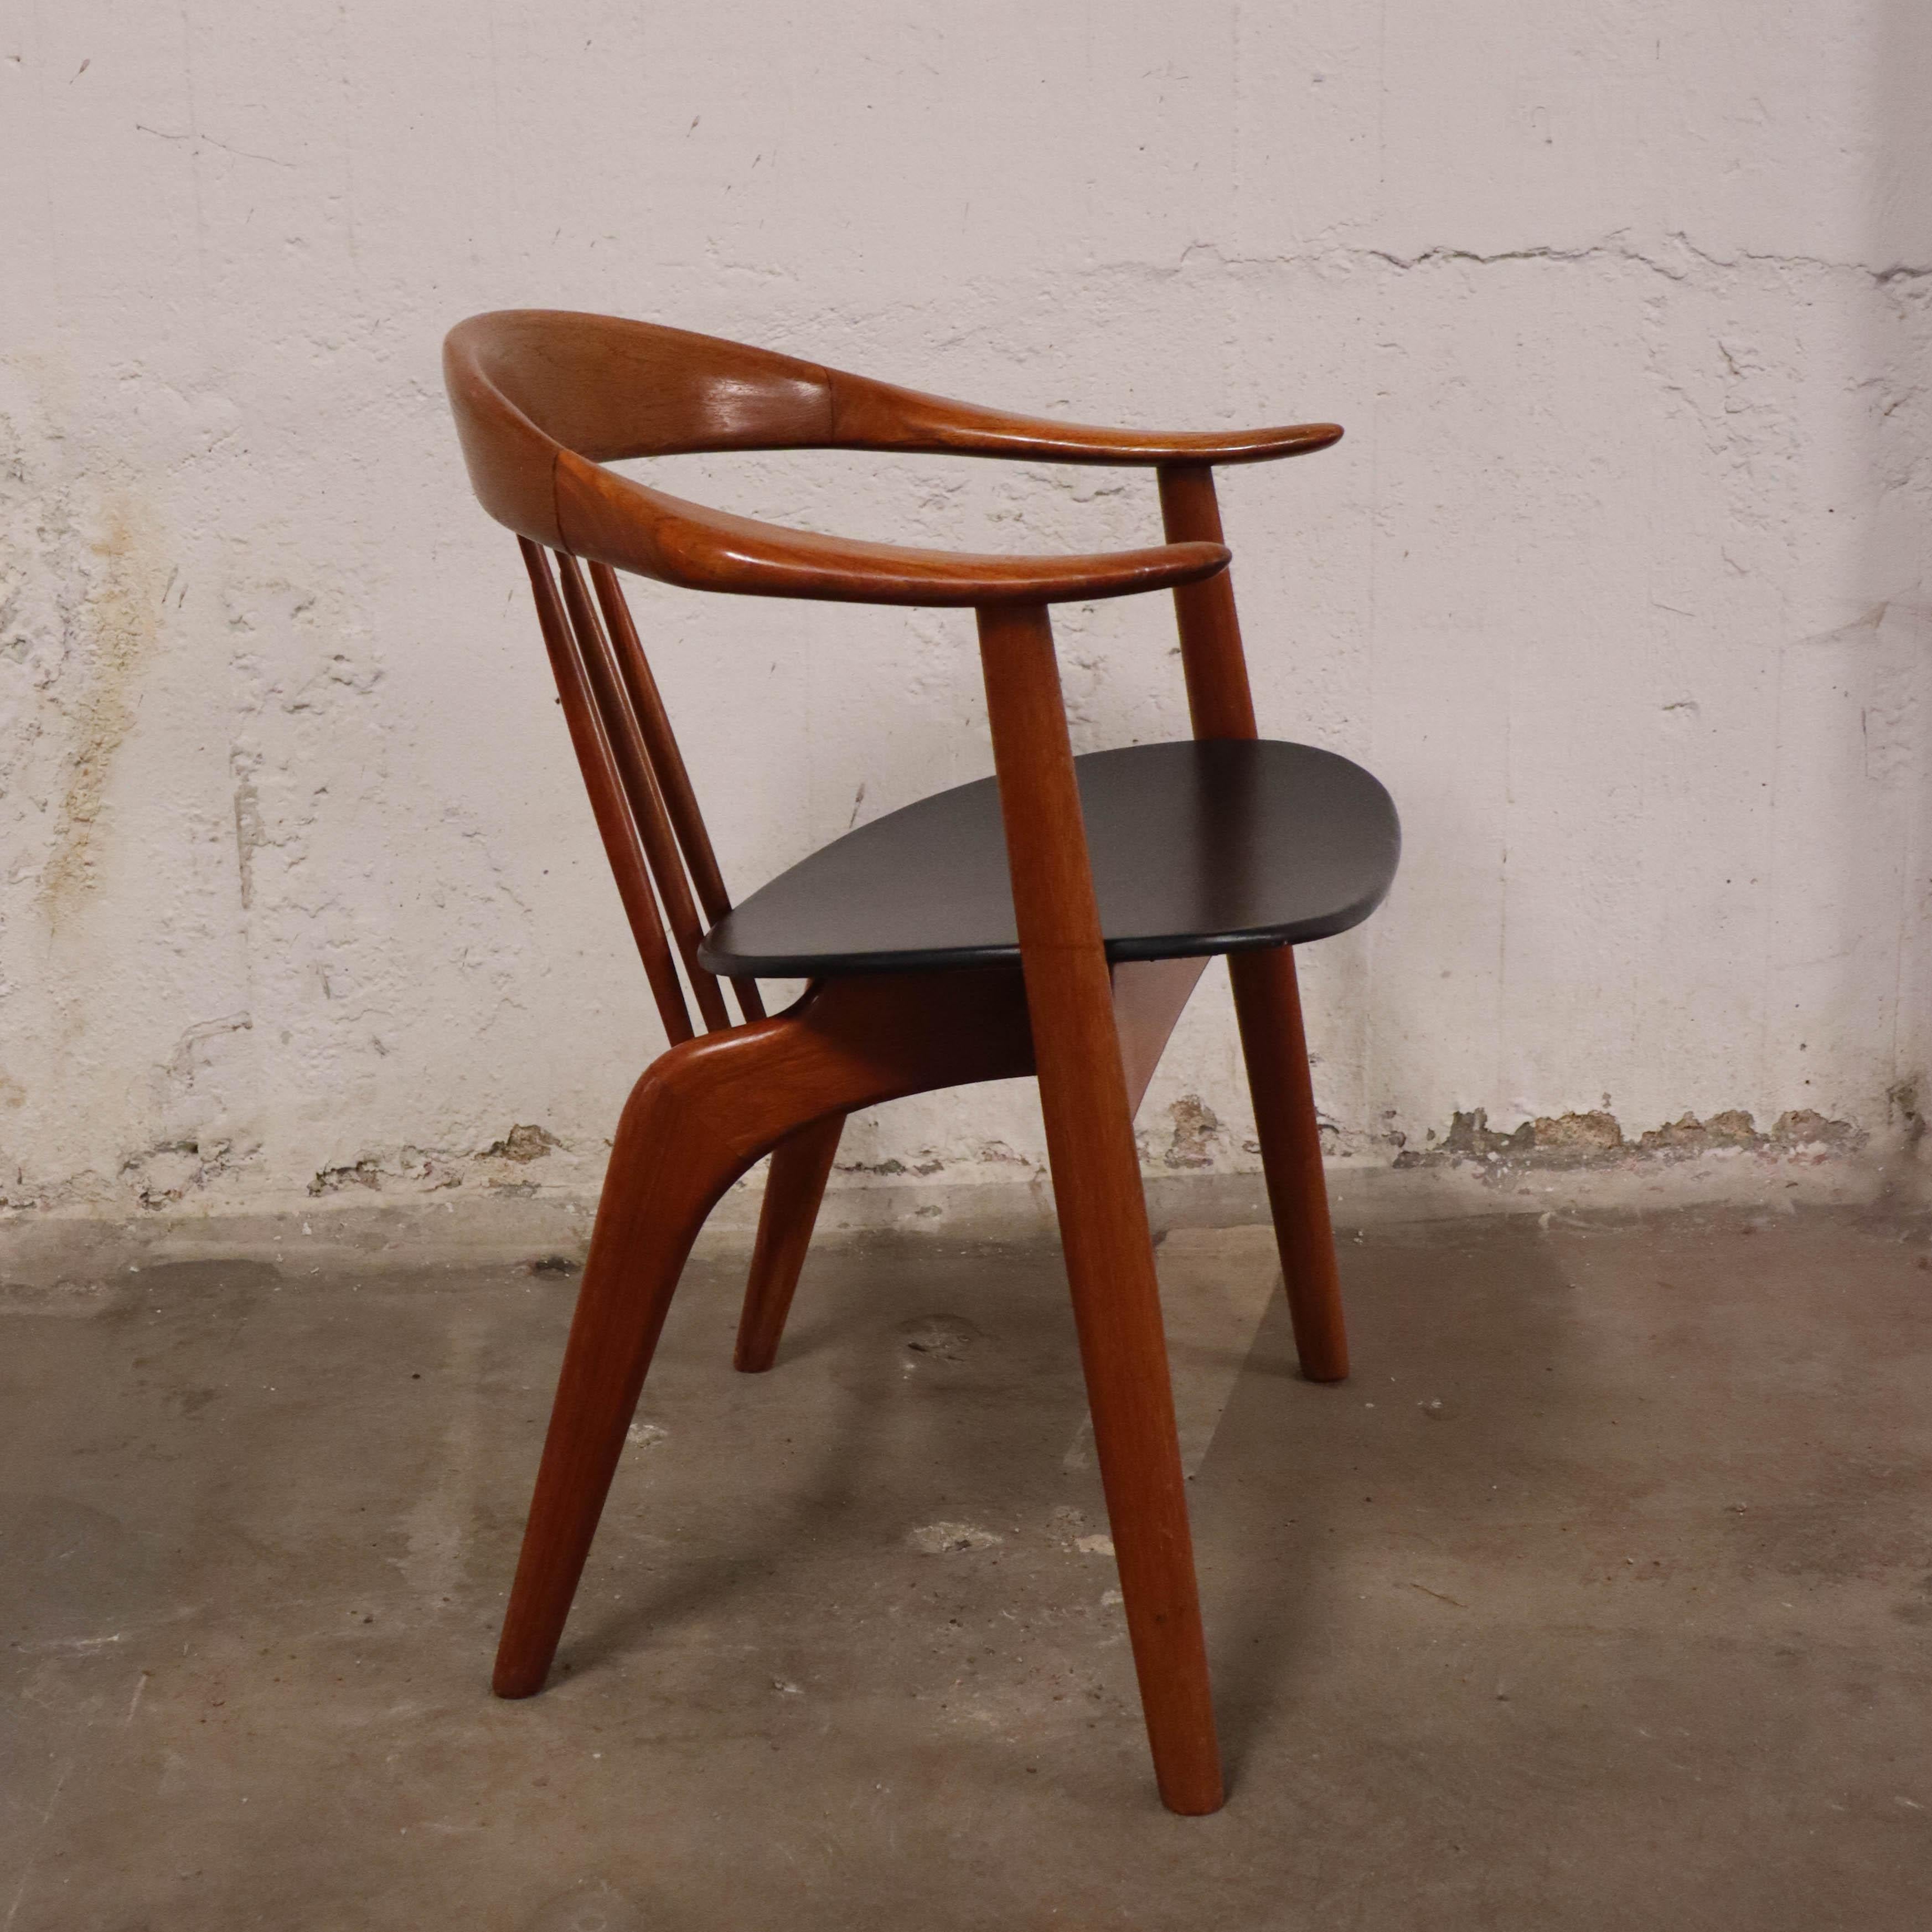 Ein Stuhl des Modells 408, entworfen von Arne Hovmand Olsen in der Mogens Kold Møbelfabrik, Dänemark, 1950er Jahre. Der Stuhl ist aus Teakholz gefertigt und hat eine Sitzfläche aus schwarzem Leder. Er ist 64 x 50 cm groß, 74 cm hoch und hat eine